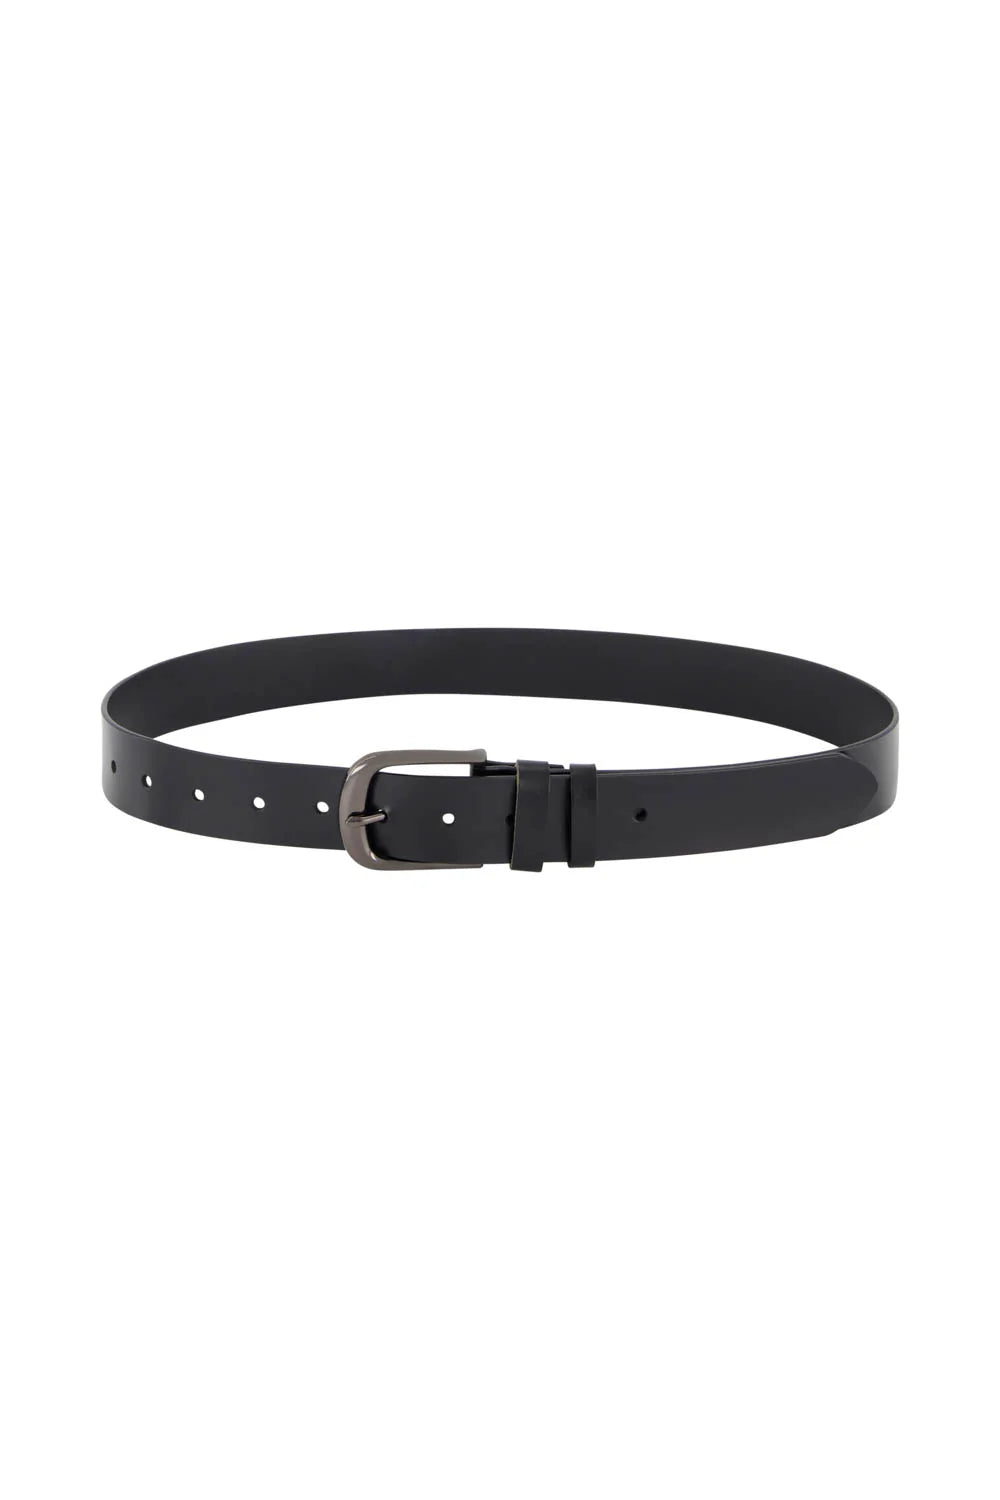 Verge Soho Leather Belt - Black